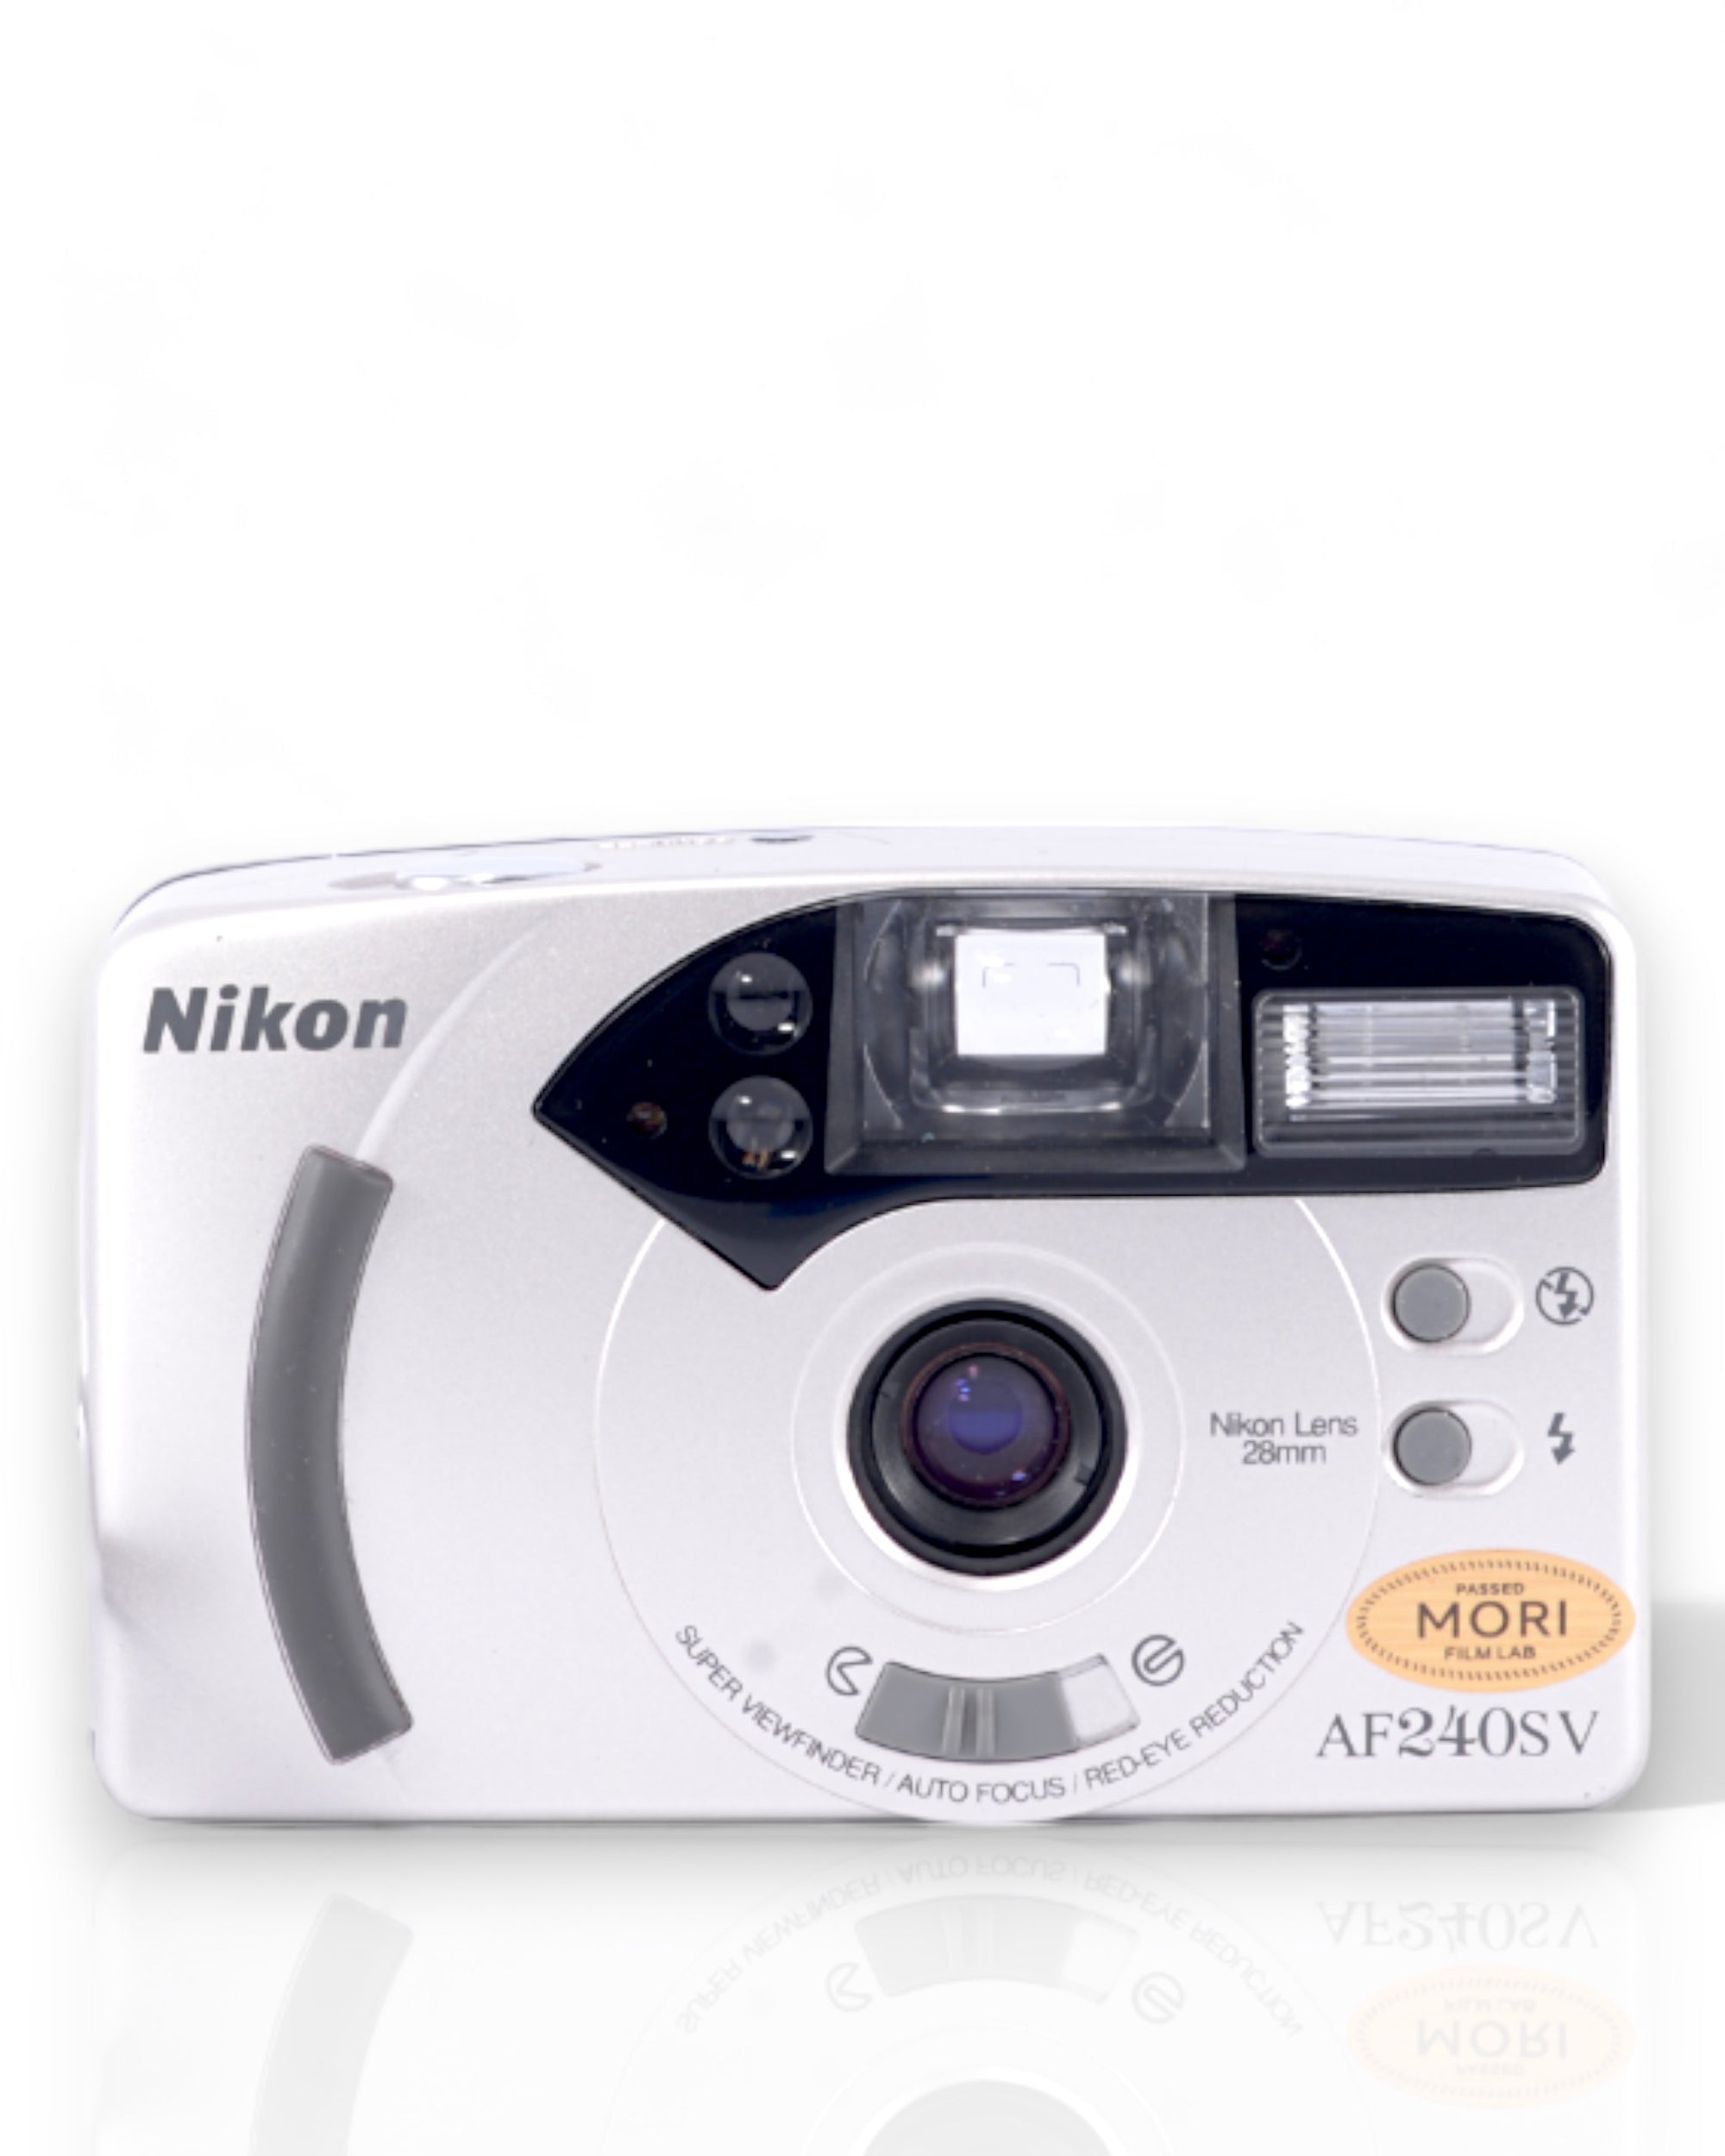 Nikon AF 240 SV 35mm Point & Shoot film camera with 28mm lens